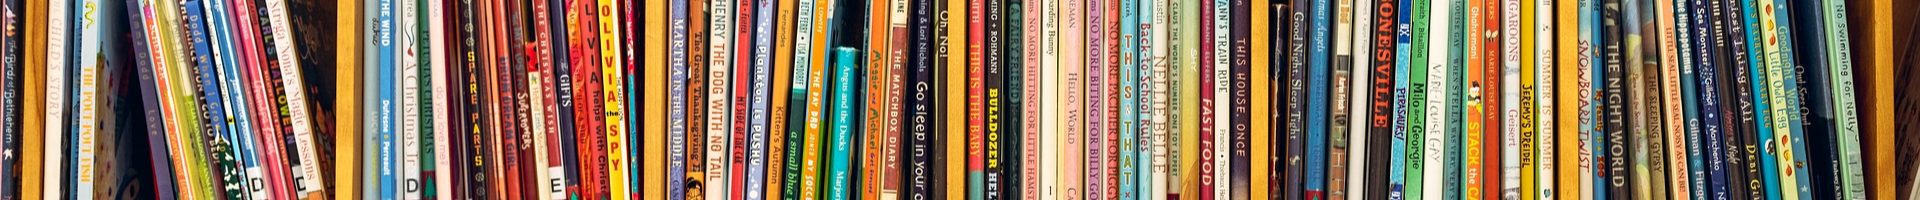 shelf of kids books